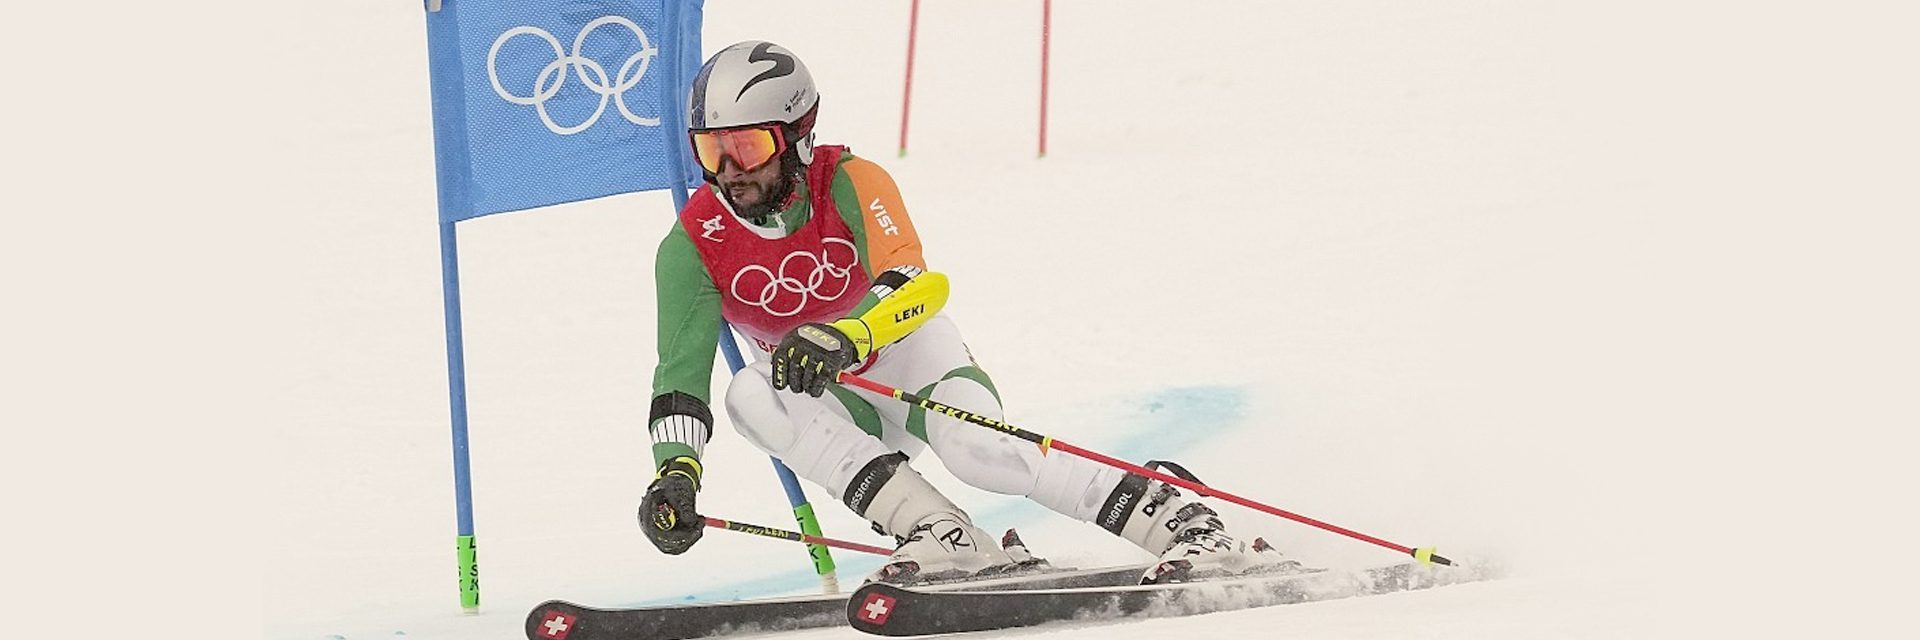 Un eslalon gigante: el objetivo del esquiador olímpico Arif Khan es conseguir un oro para India